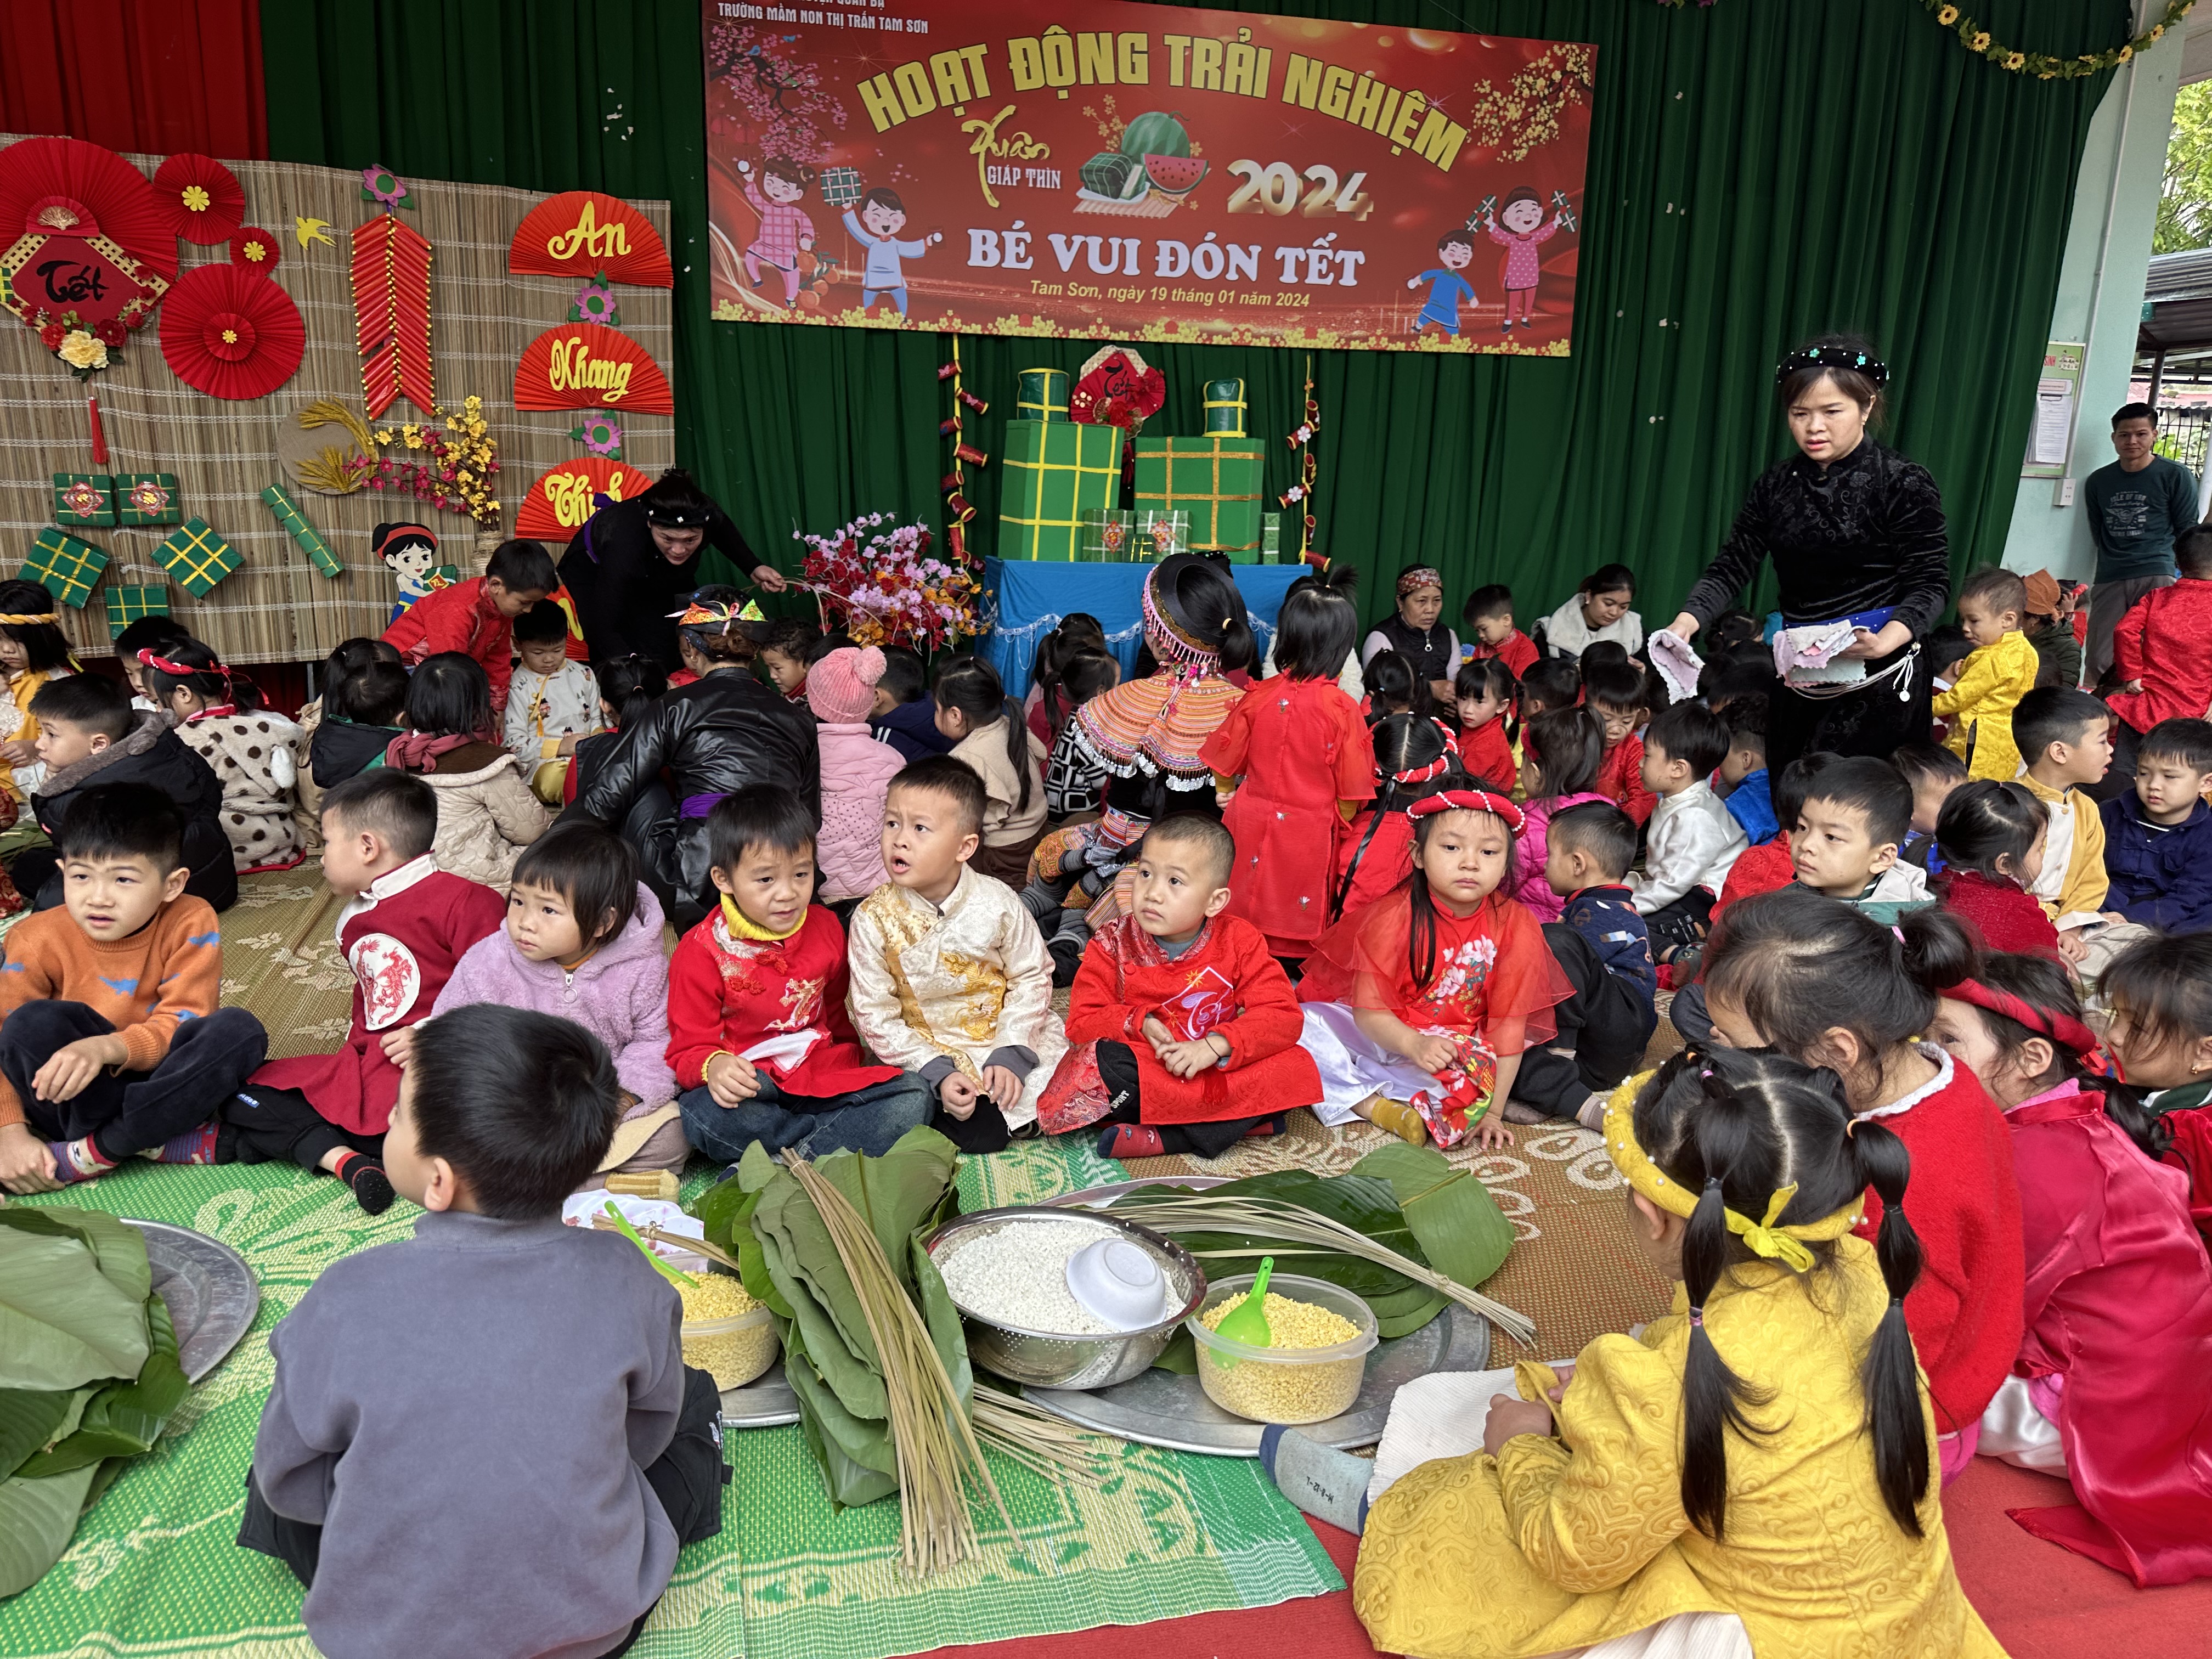 Trường Mầm non Tam Sơn tổ chức hoạt động trải nghiệm bé vui đón Tết năm 2024